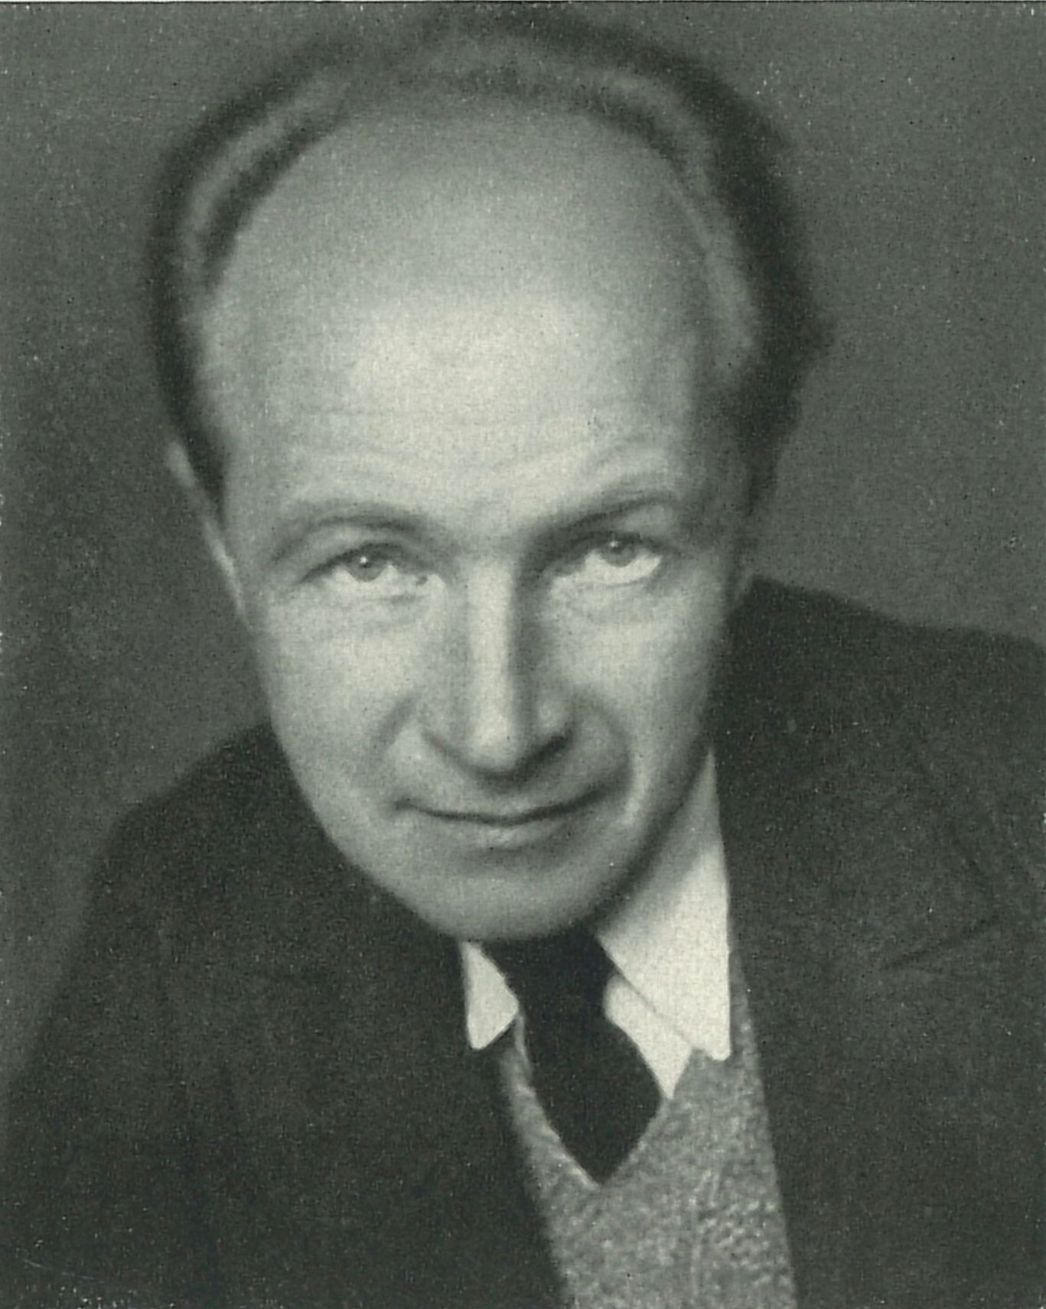 Portrait photograph of Ernst Wiechert